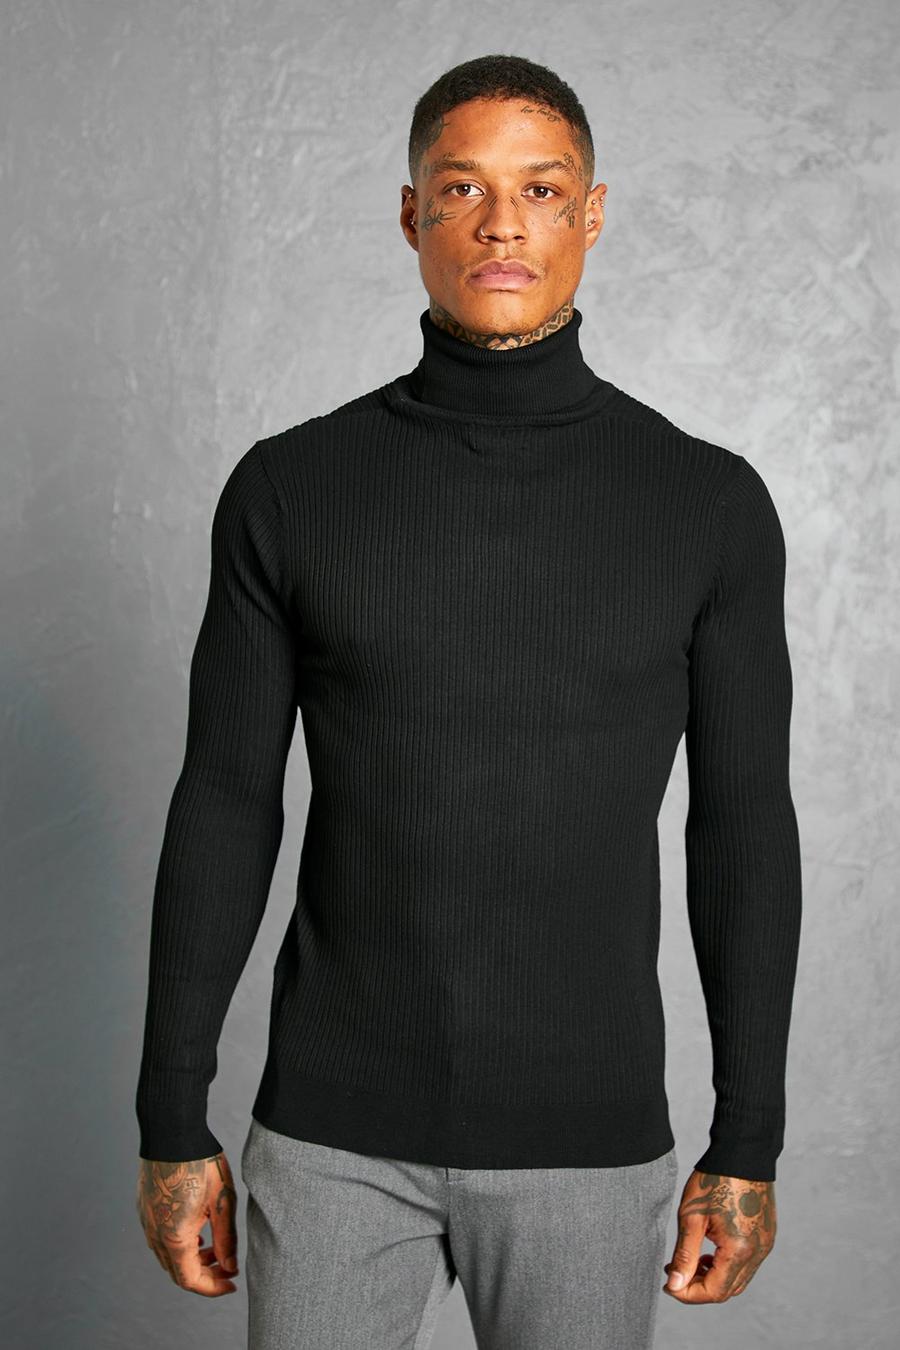 שחור nero סוודר ארוג מבד ממוחזר בגזרה רגילה עם צווארון נגלל